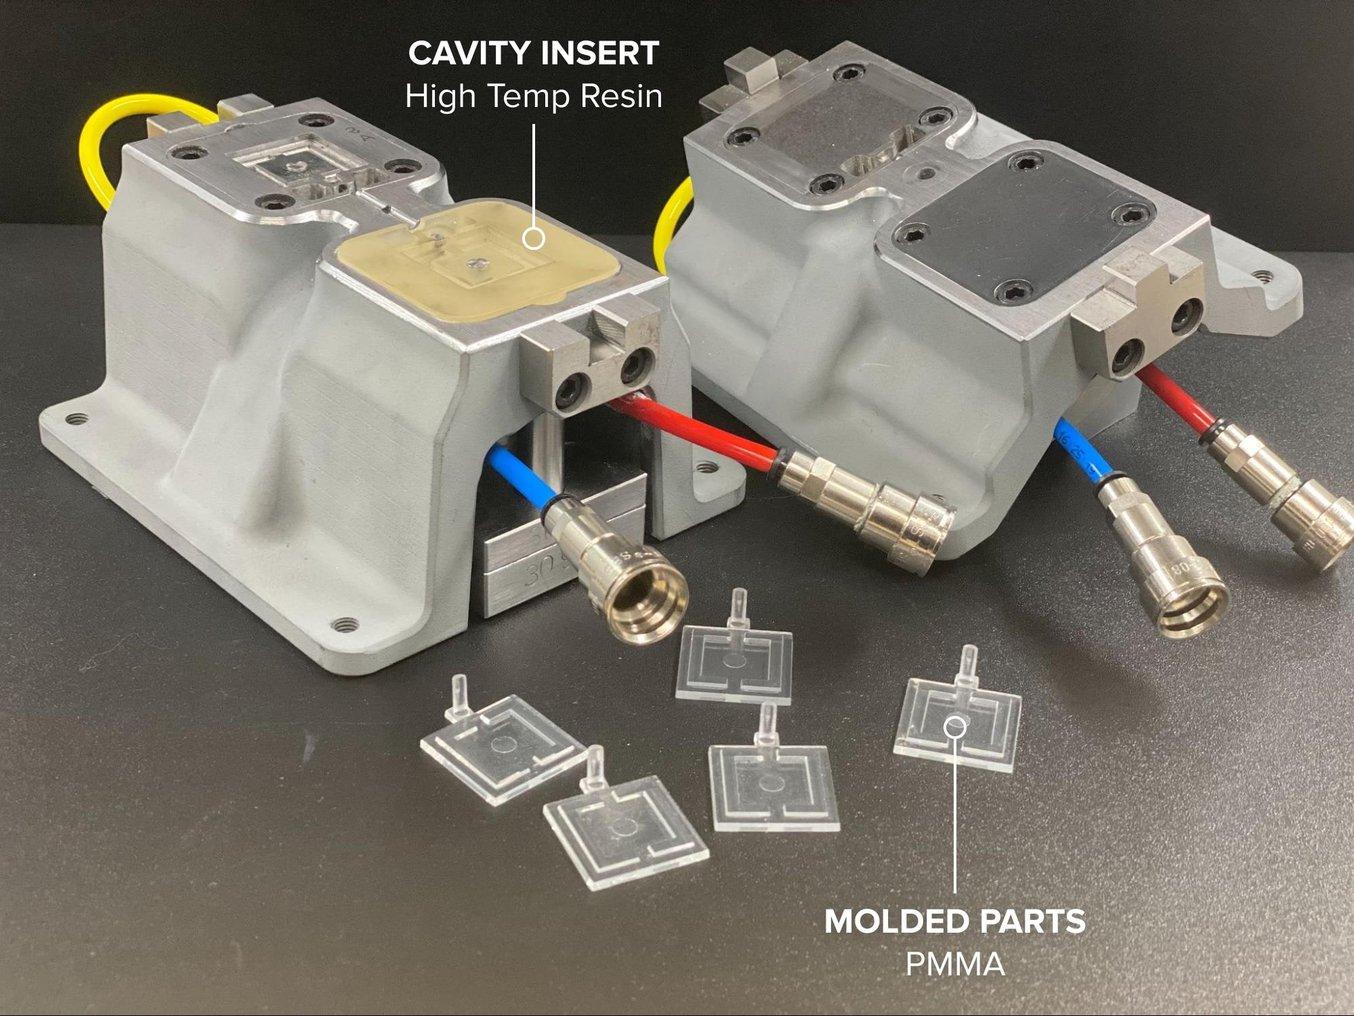 Installation de moulage par injection pour un composant automobile en PMMA, avec un insert de moule imprimé en High Temp Resin.